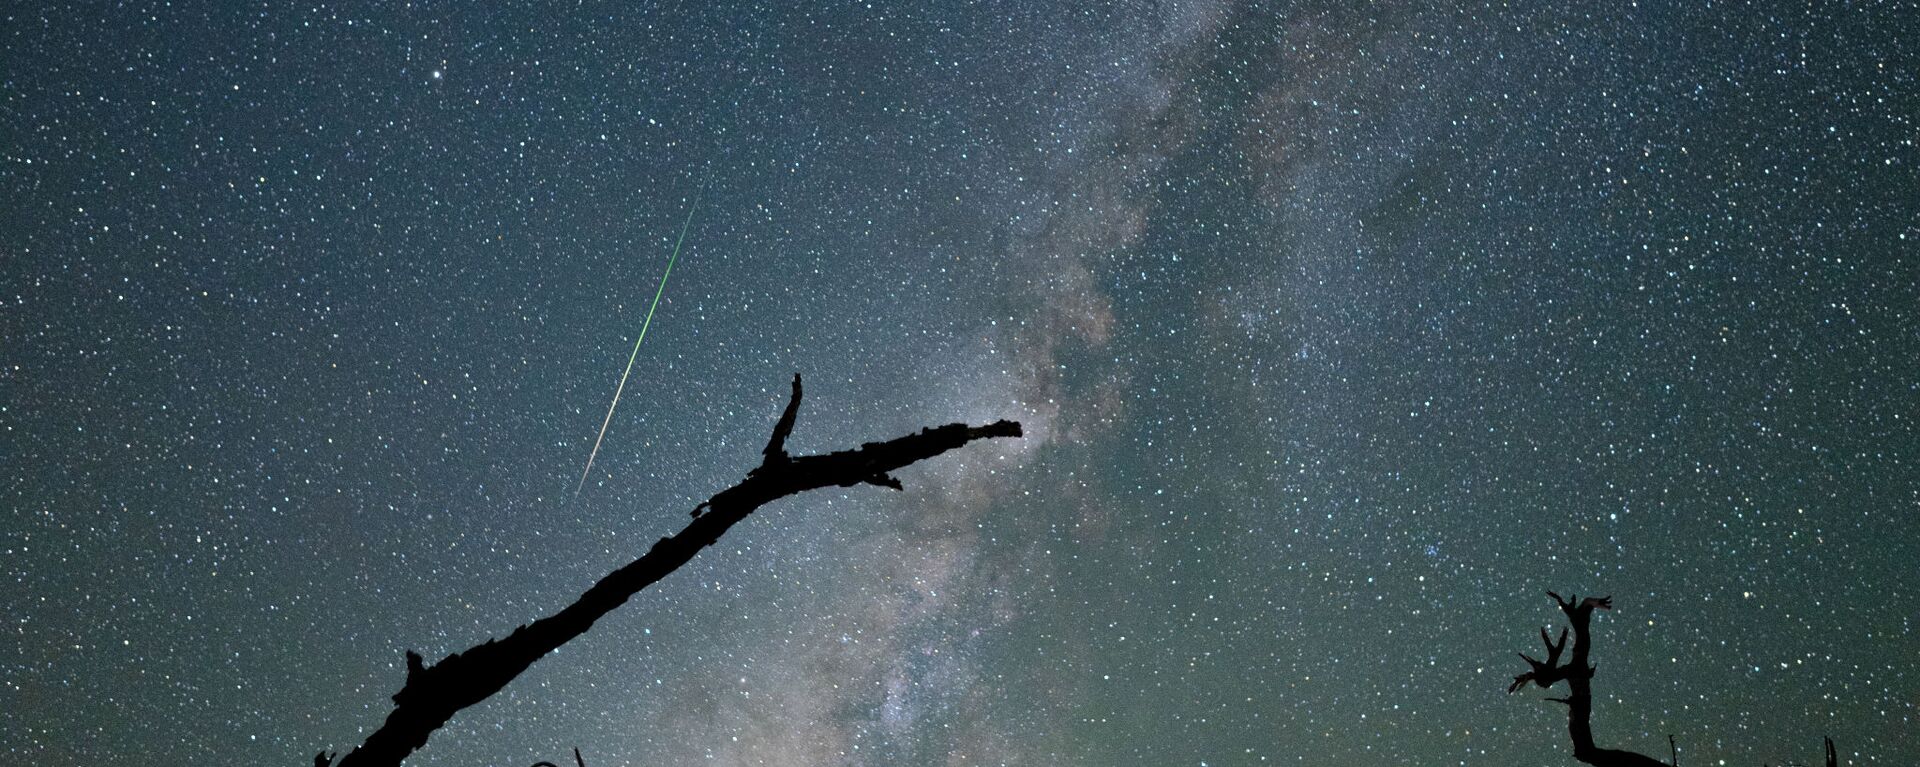 Млечный Путь и метеор Персеида над Мауна-Кеа - Sputnik Молдова, 1920, 12.08.2021